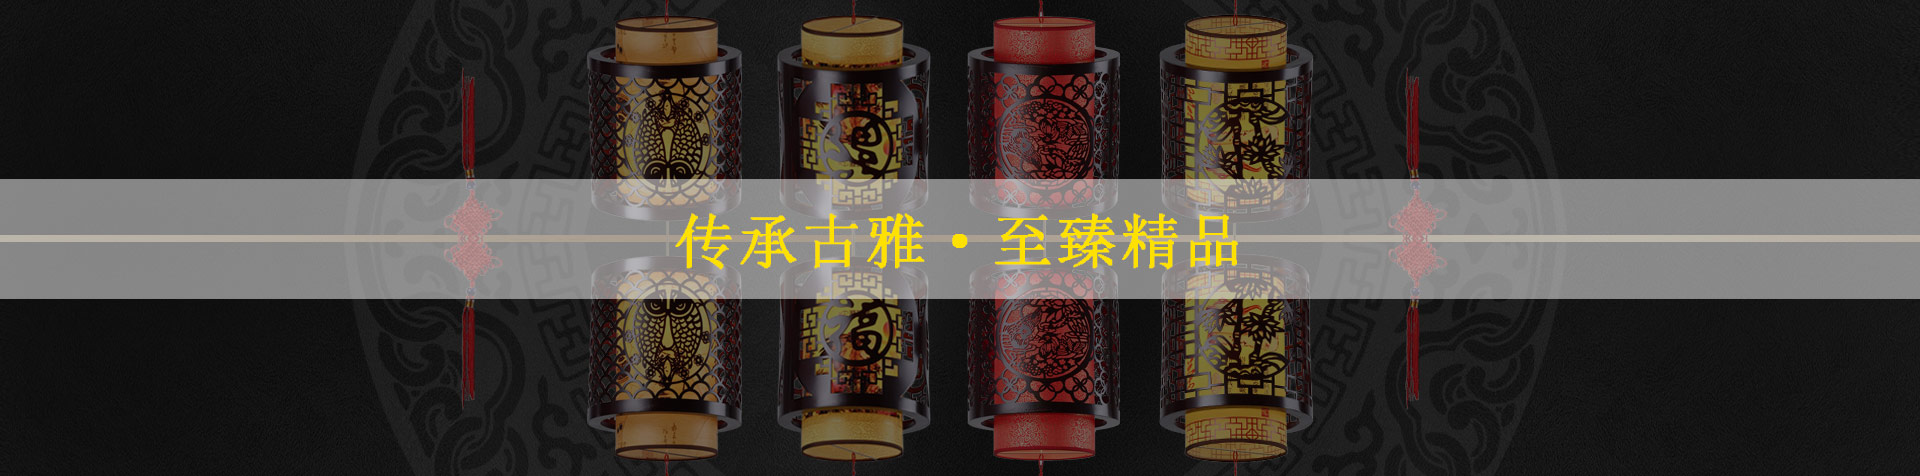 中式茶樓吊燈,提升整個茶空間的文化韻味